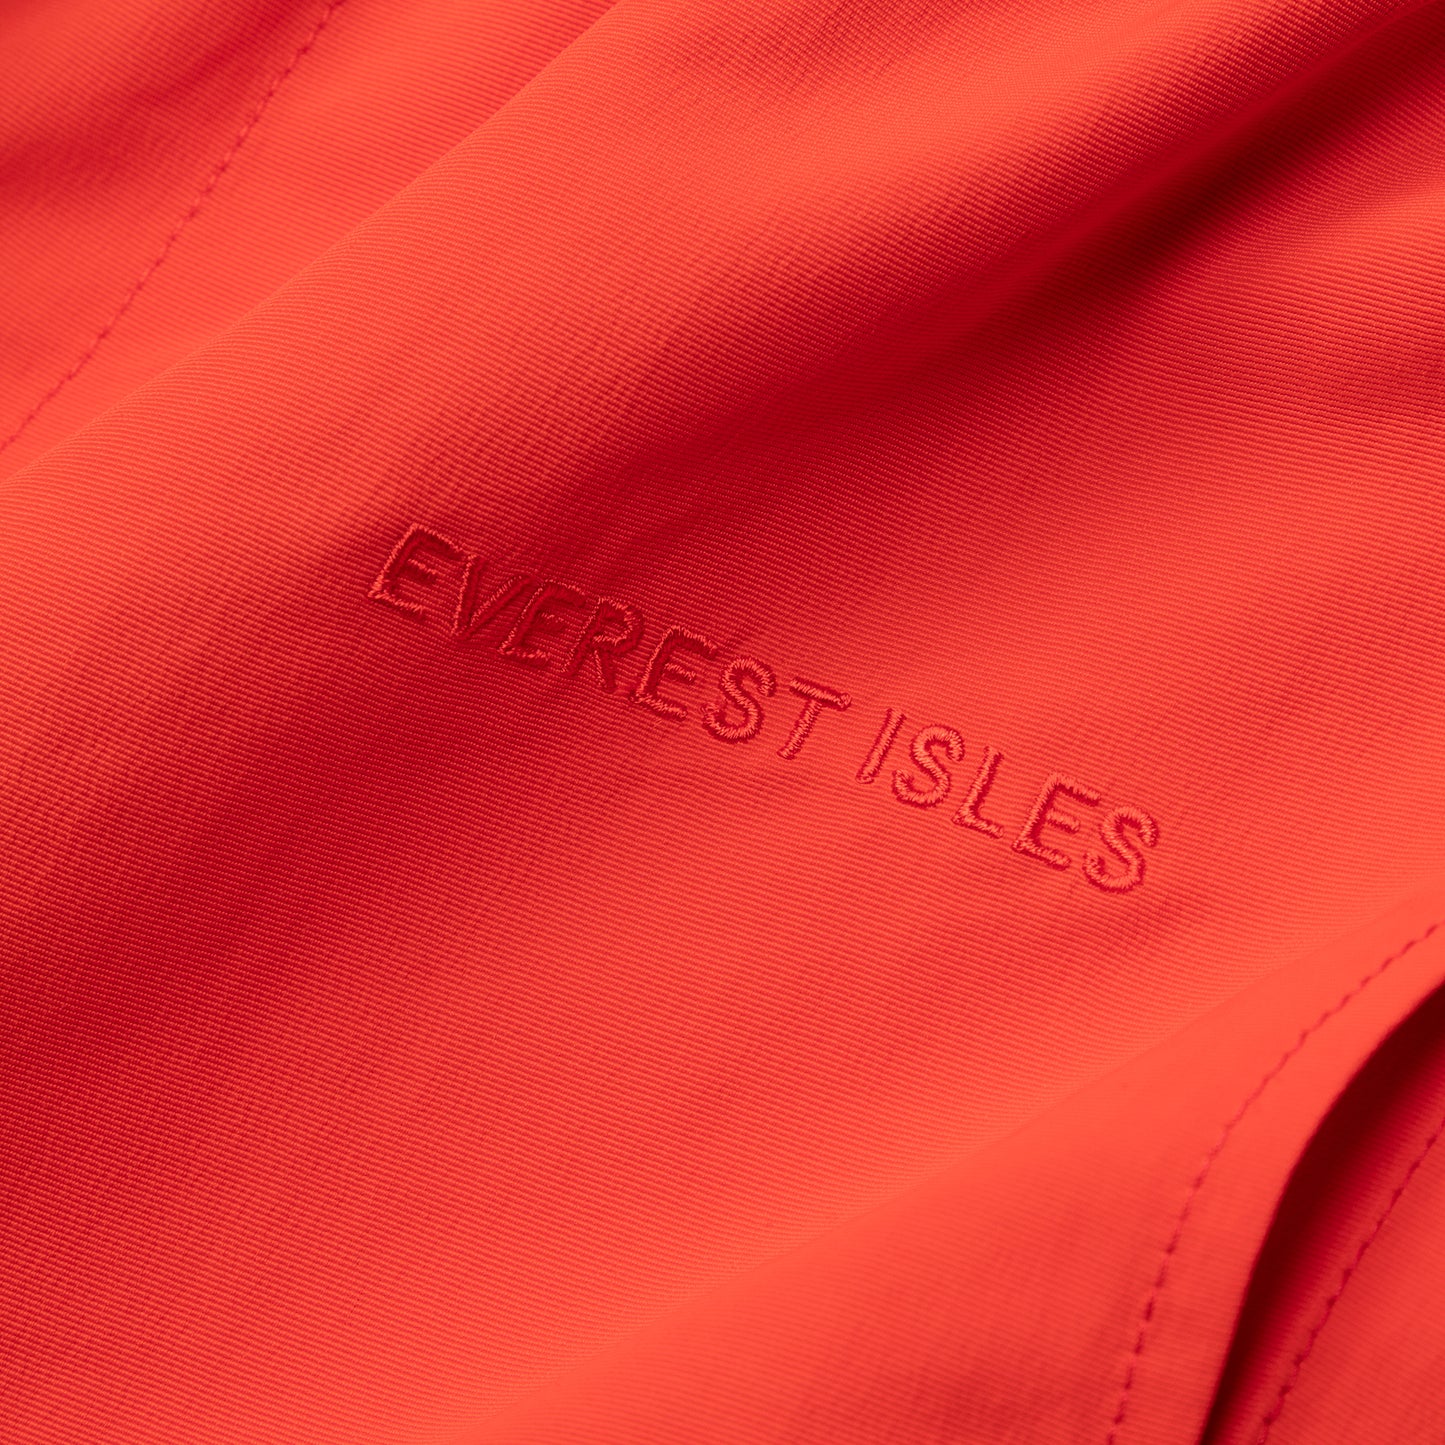 Everest Isles Beacher Short (Red)